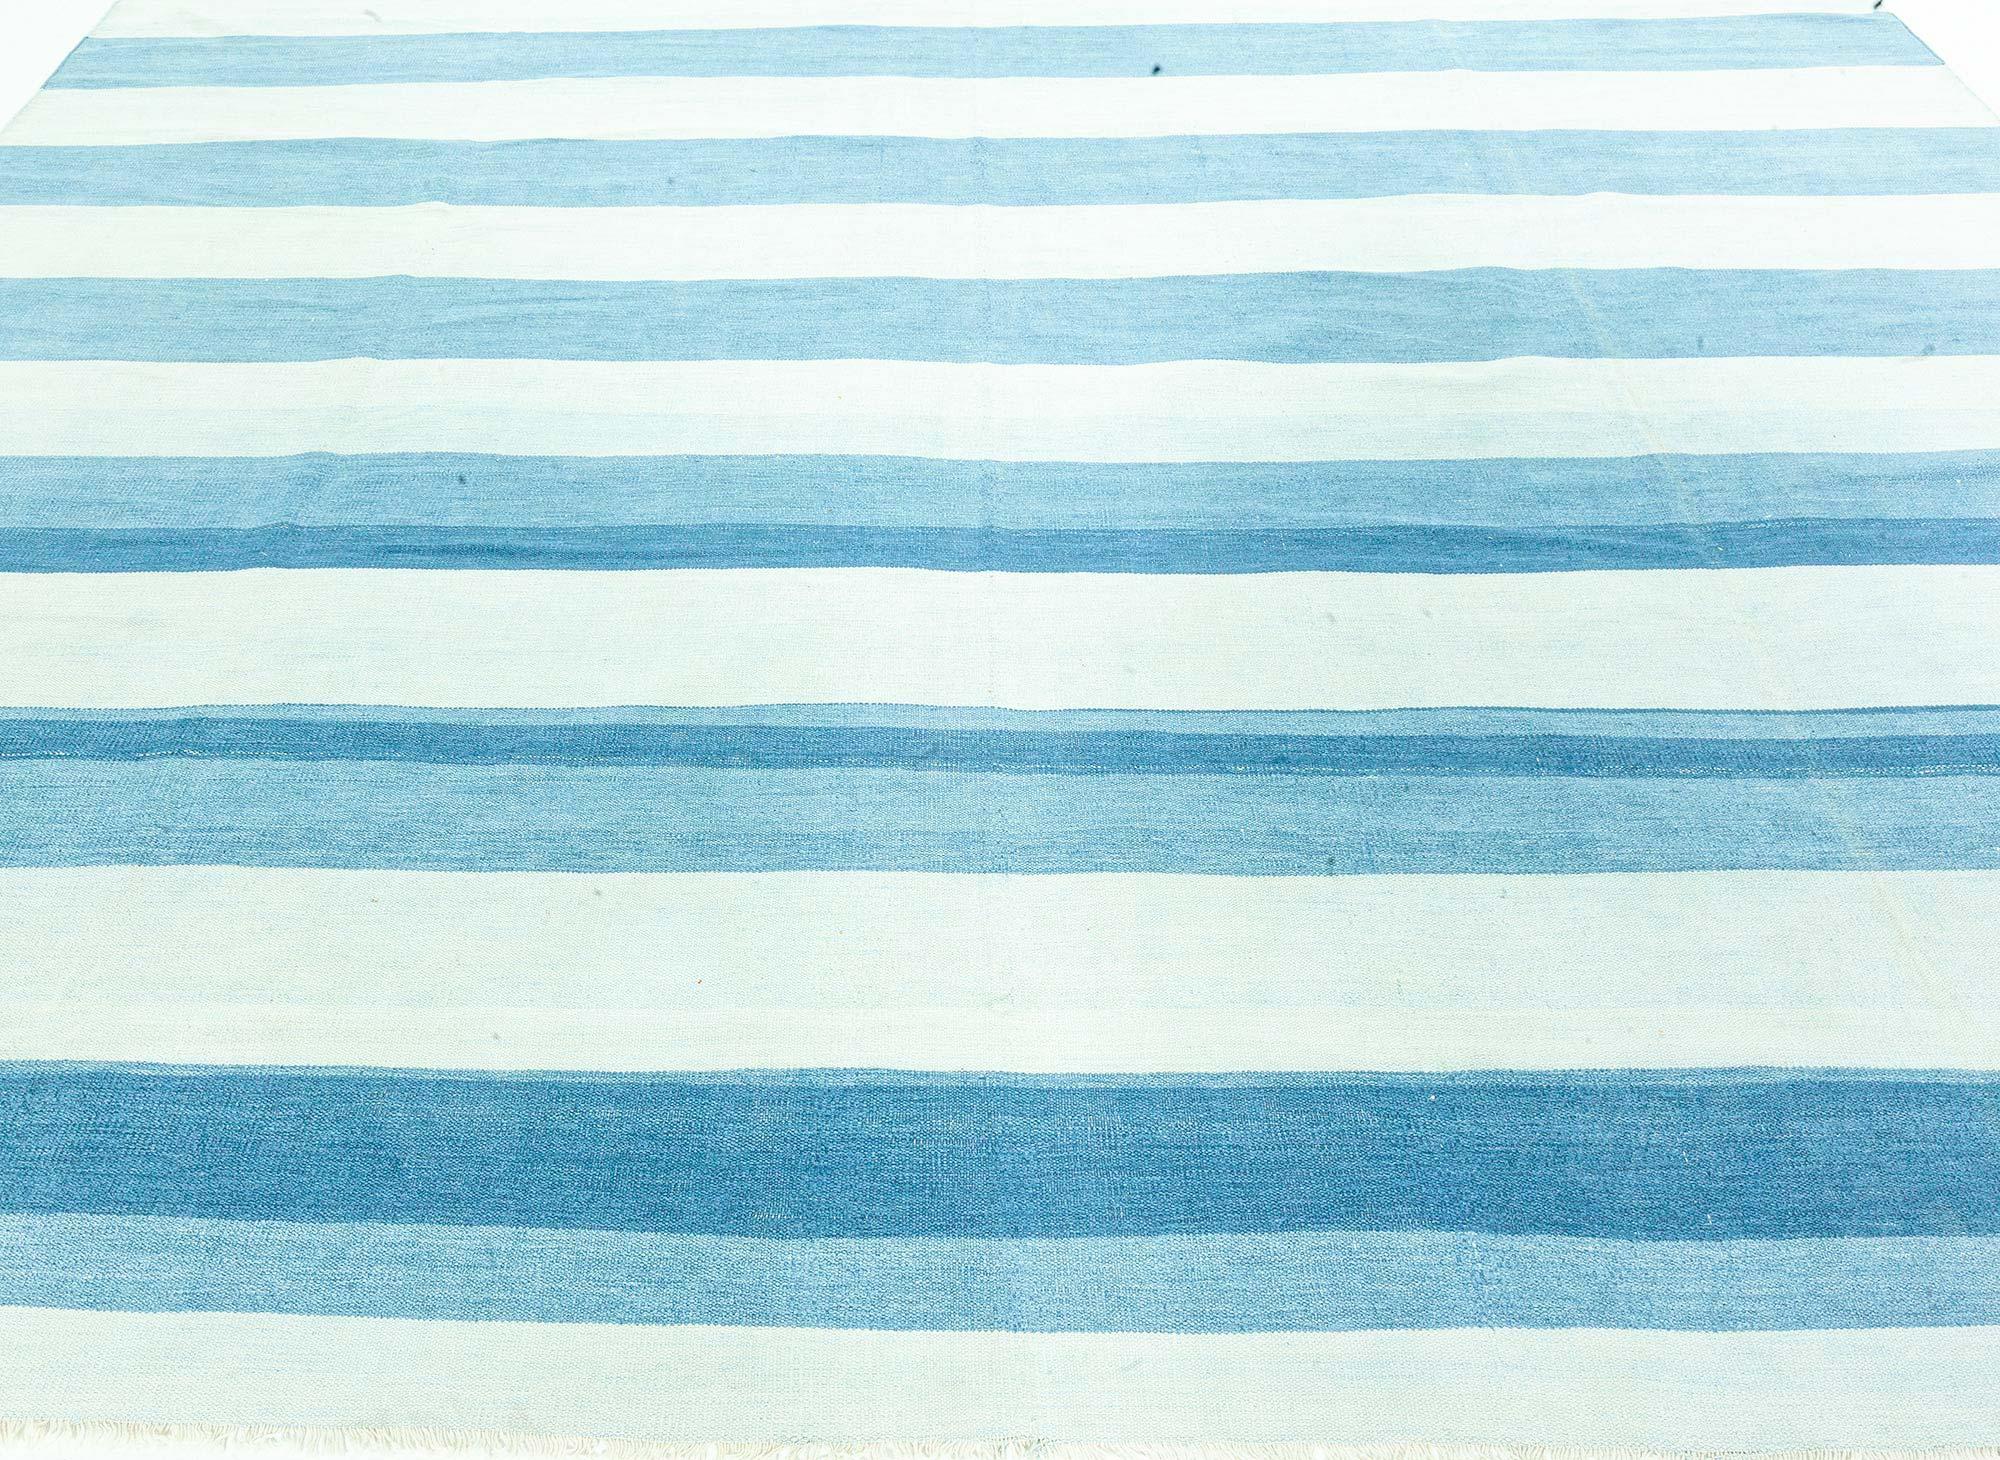 Vintage Indian Dhurrie Striped Blue Beige Rug.
Size: 7'9